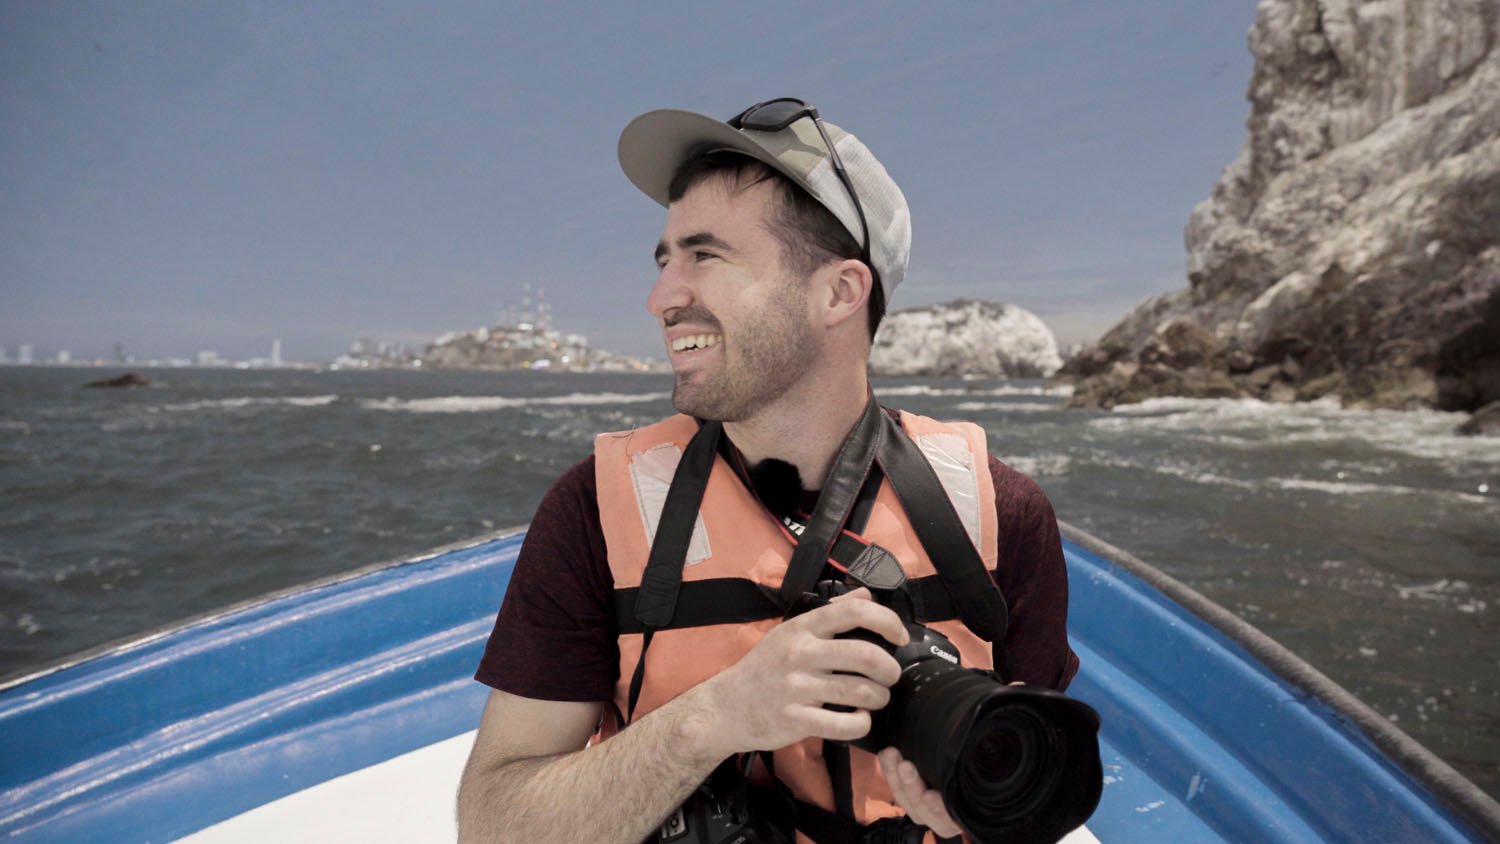 Hombre sonriente con chaleco salvavidas y sombrero y sosteniendo una cámara mientras está sentado en un bote, con una playa rocosa y agua al fondo.